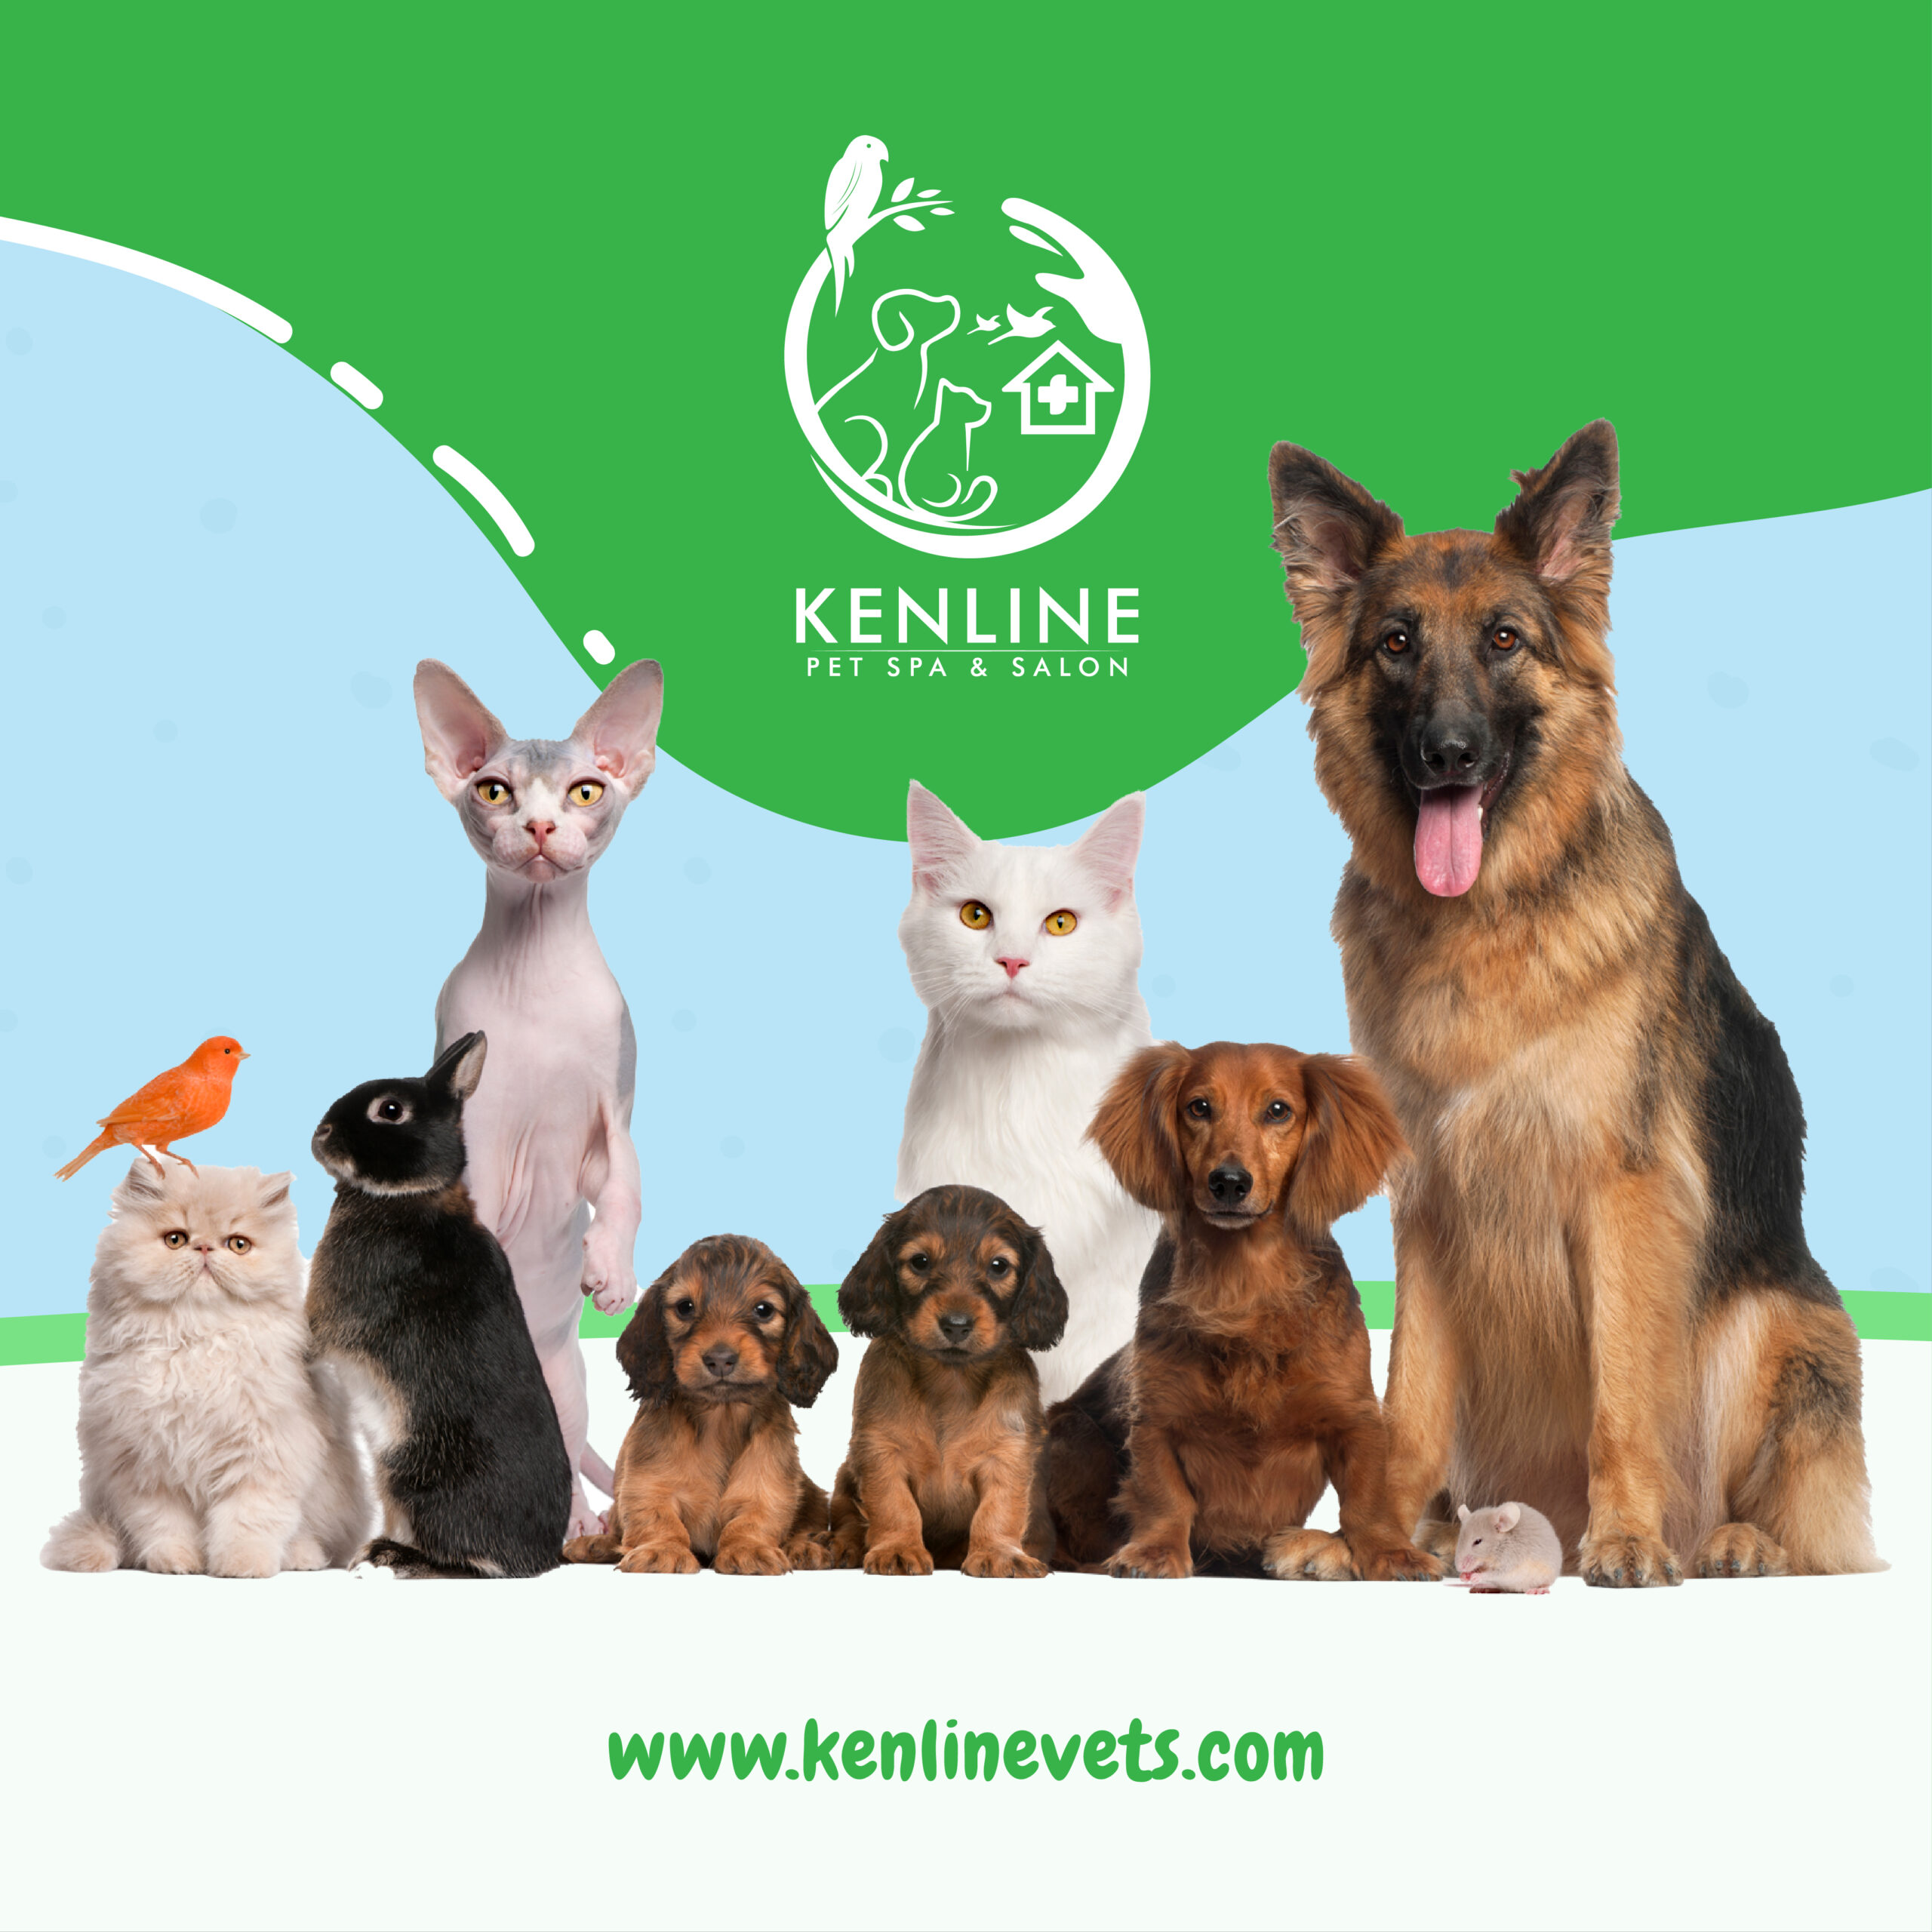 Kenline Pet Spa & Salon